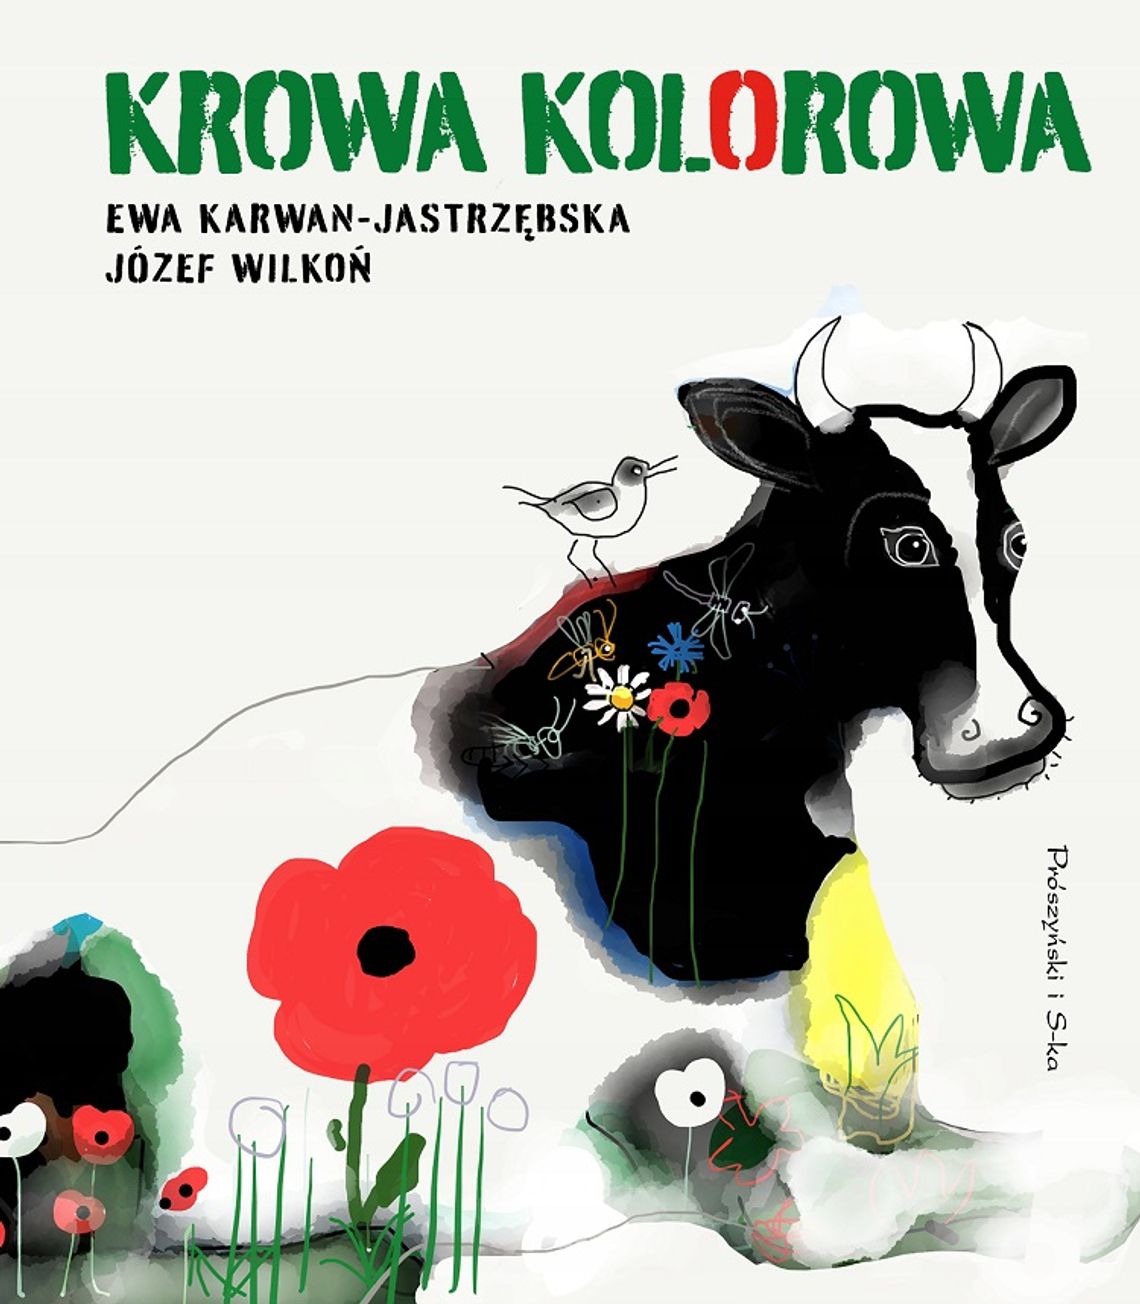 Ewa Karwan-Jastrzębska, Józef Wilkoń "Krowa kolorowa"; wyd. Prószyński i S-ka